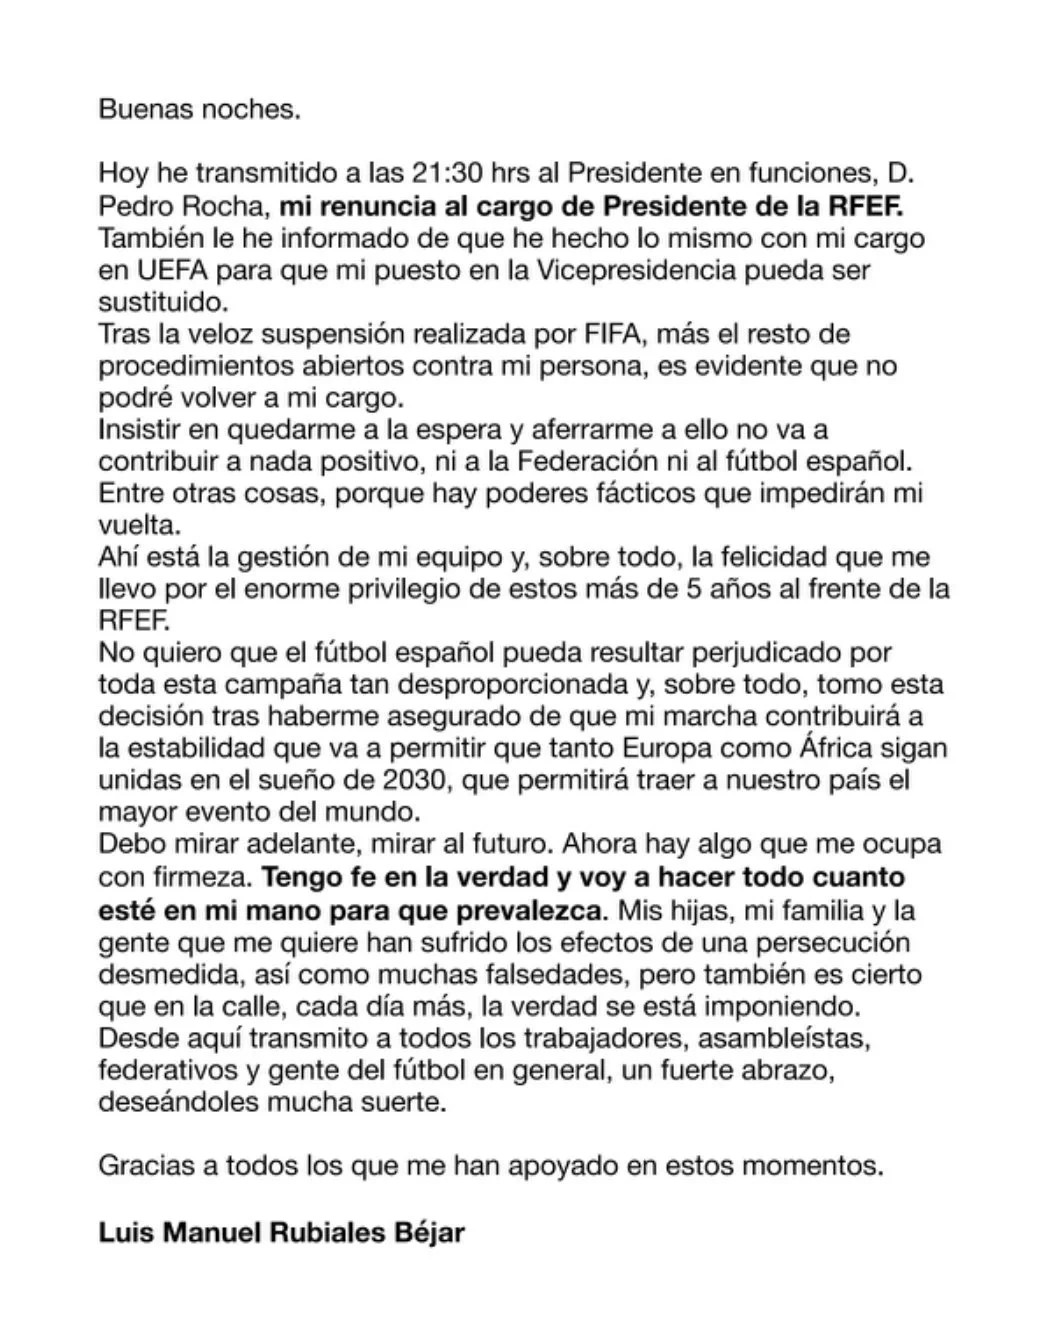 Luis Rubiales renunció como presidente de la RFEF: Aquí su carta de renuncia